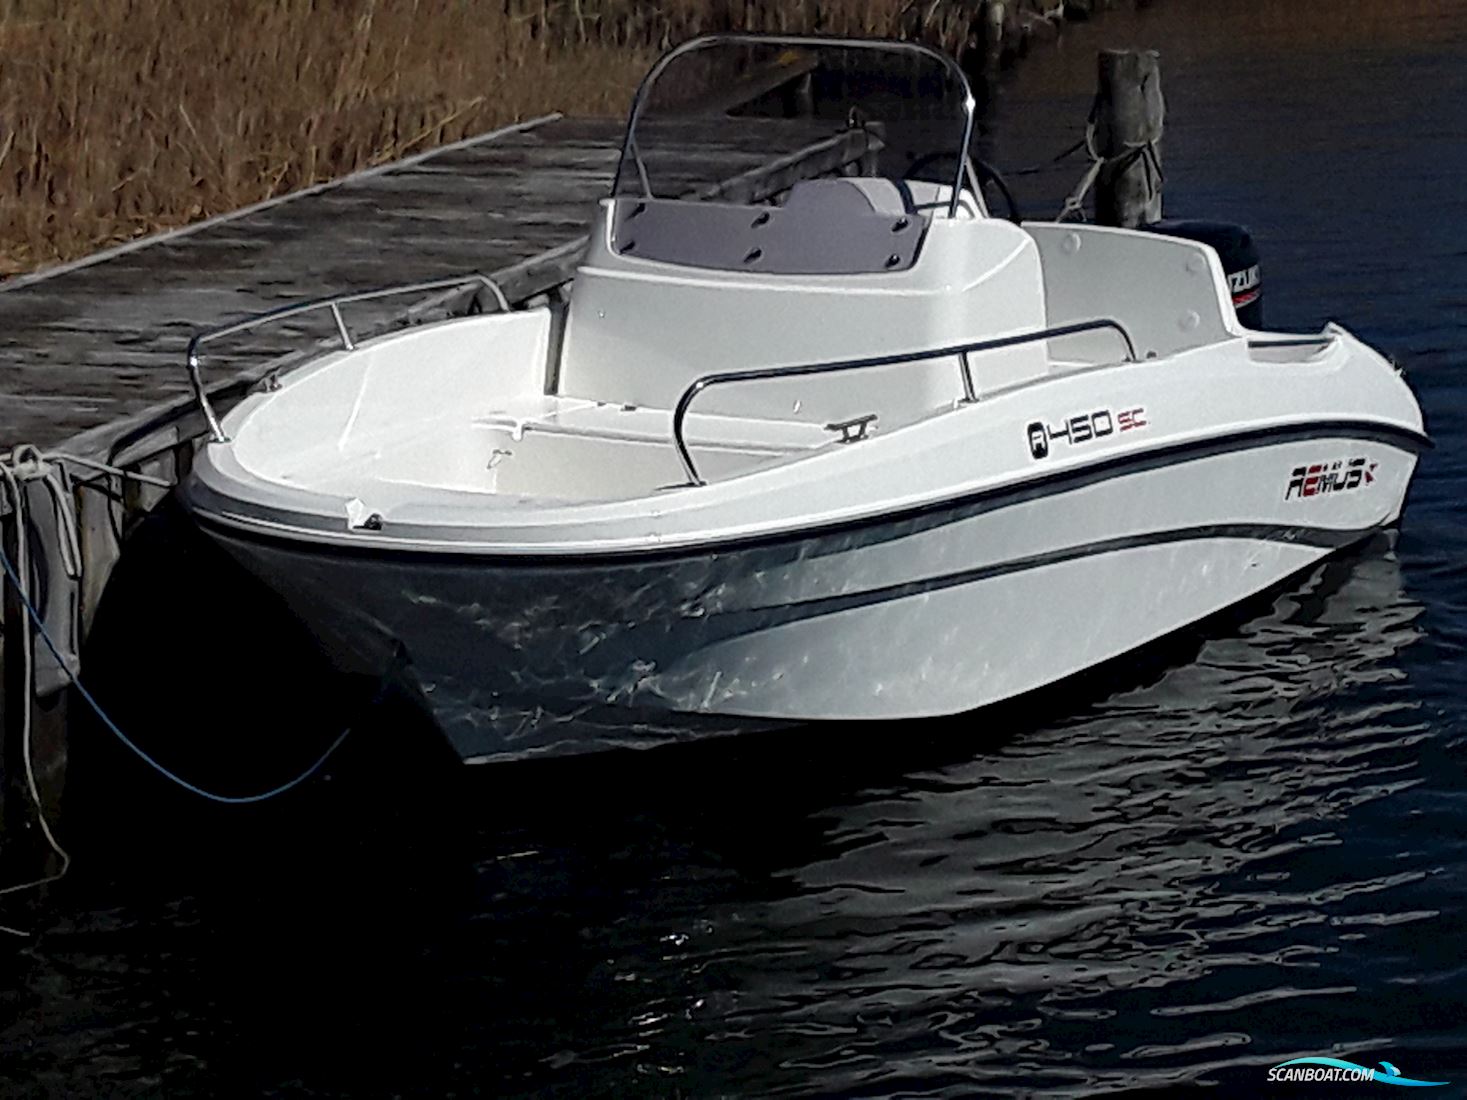 Remus 450 Styrepultbåd Motor boat 2019, with Suzuki DF60 Atl engine, Denmark